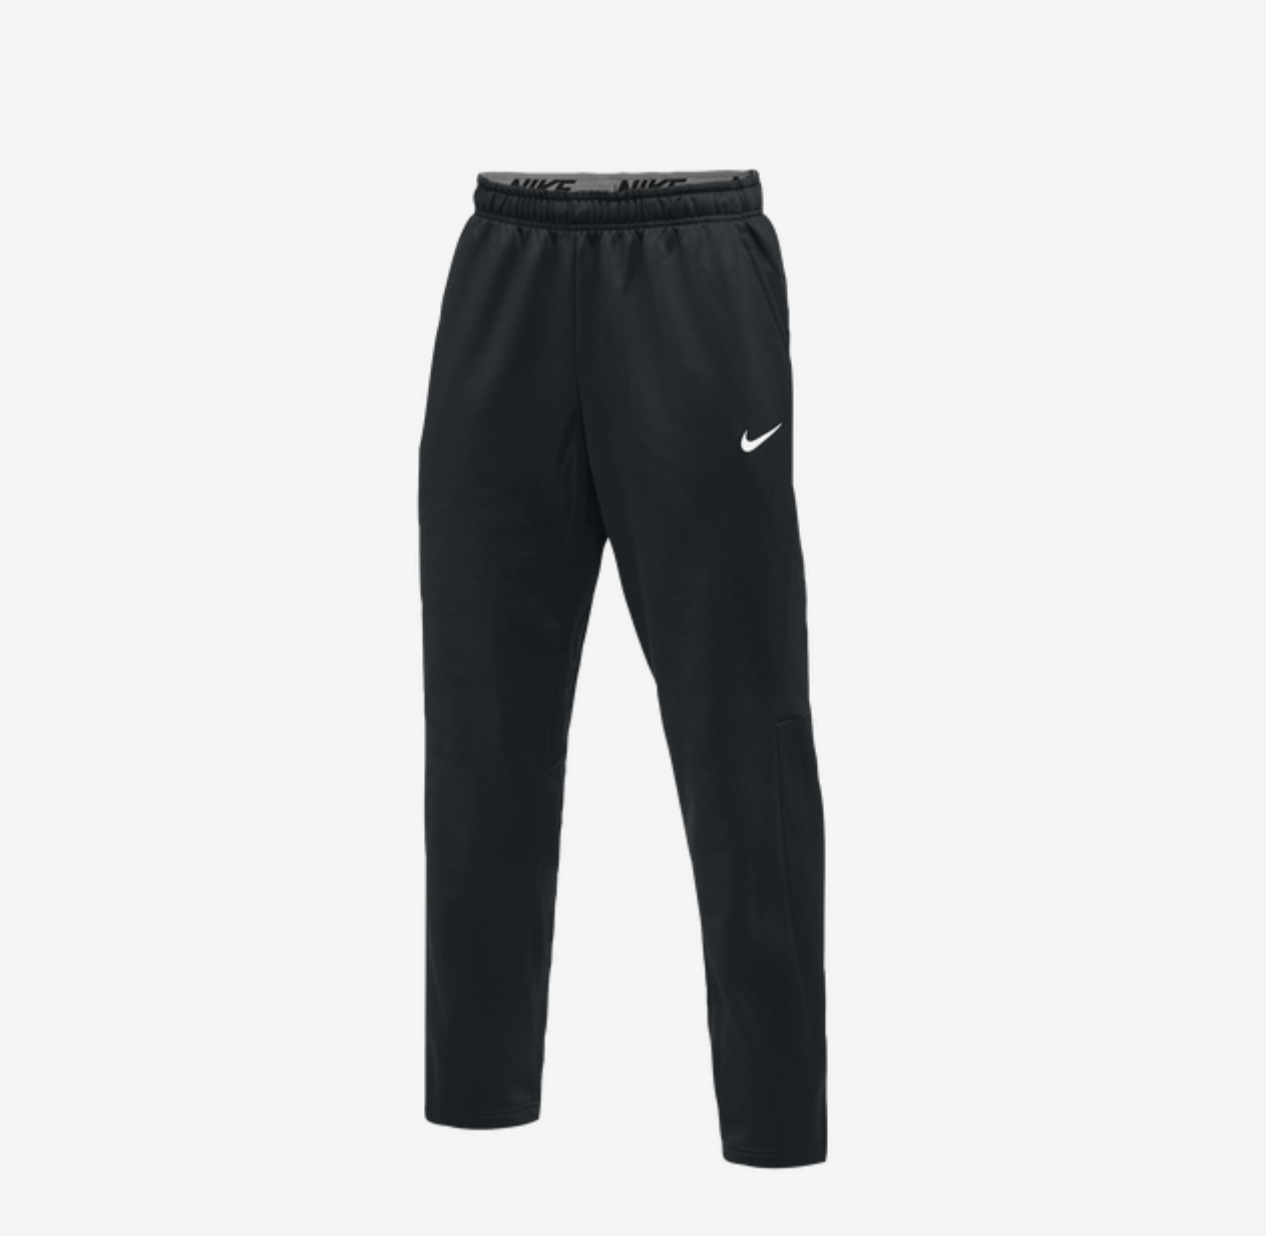 65% OFF the Nike Sportswear Team Therma Pants — Sneaker Shouts